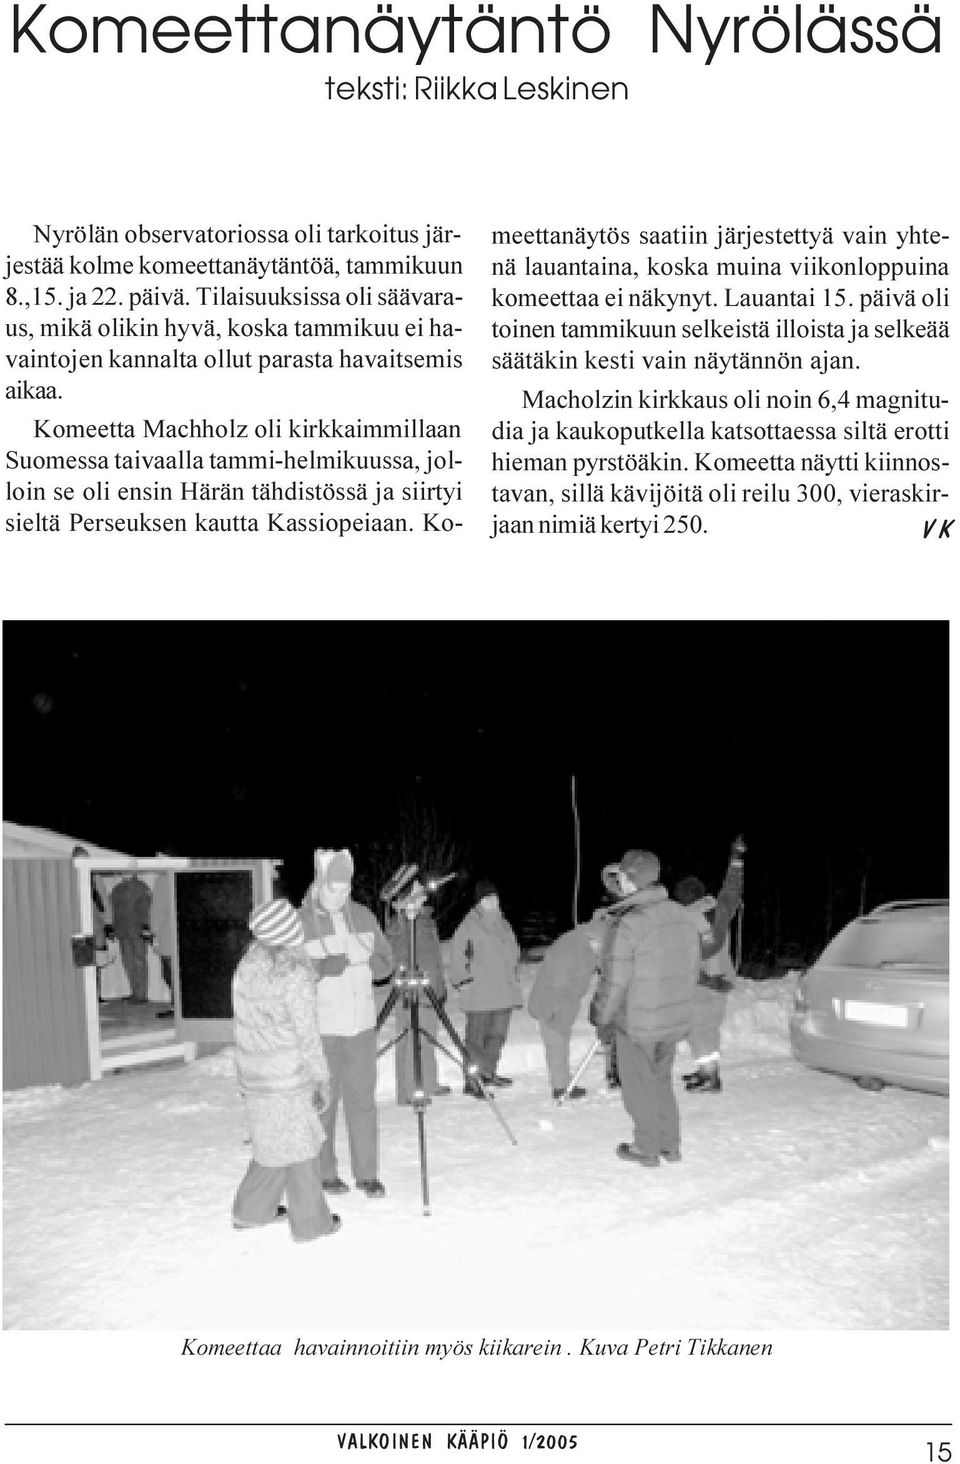 Komeetta Machholz oli kirkkaimmillaan Suomessa taivaalla tammi-helmikuussa, jolloin se oli ensin Härän tähdistössä ja siirtyi sieltä Perseuksen kautta Kassiopeiaan.